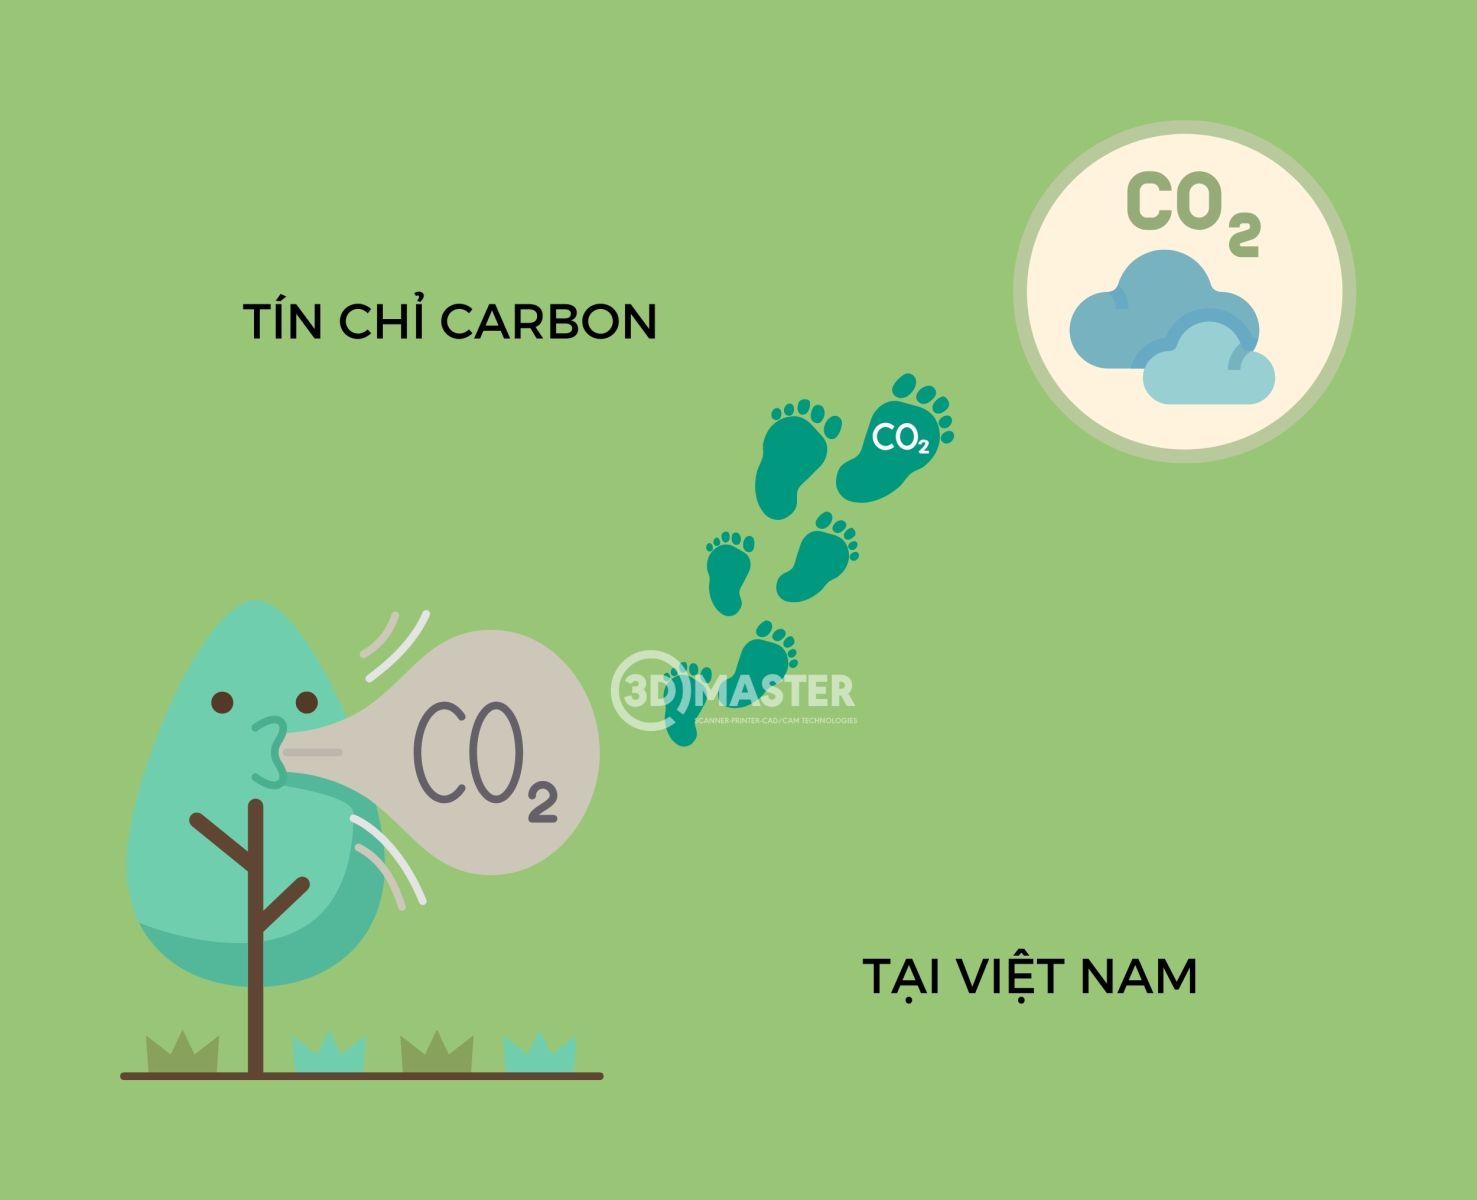 Tình hình tín chỉ carbon tại Việt Nam